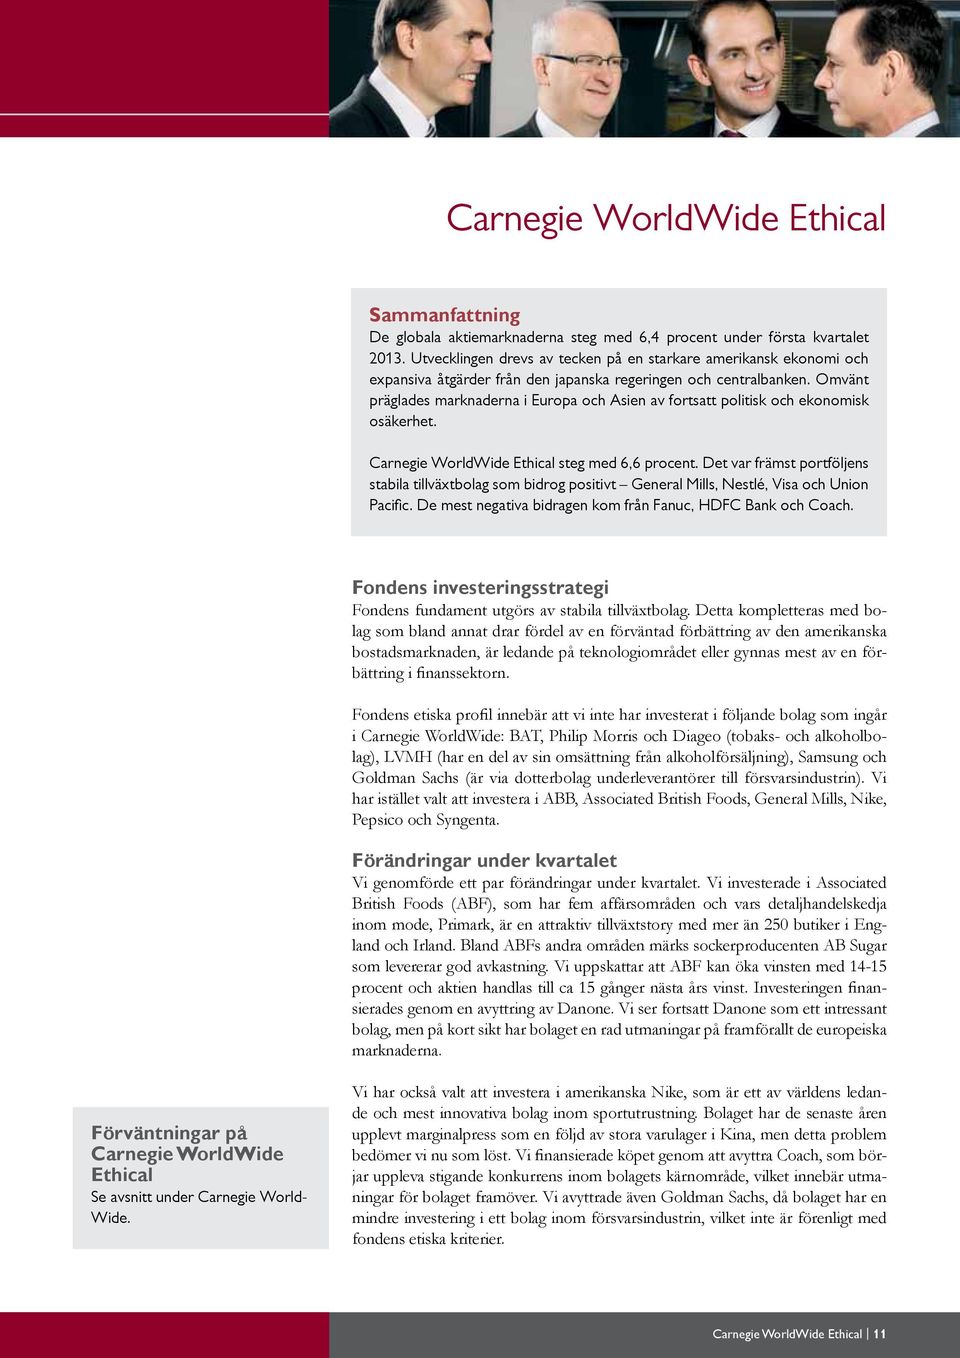 Omvänt präglades marknaderna i Europa och Asien av fortsatt politisk och ekonomisk osäkerhet. Carnegie WorldWide Ethical steg med 6,6 procent.